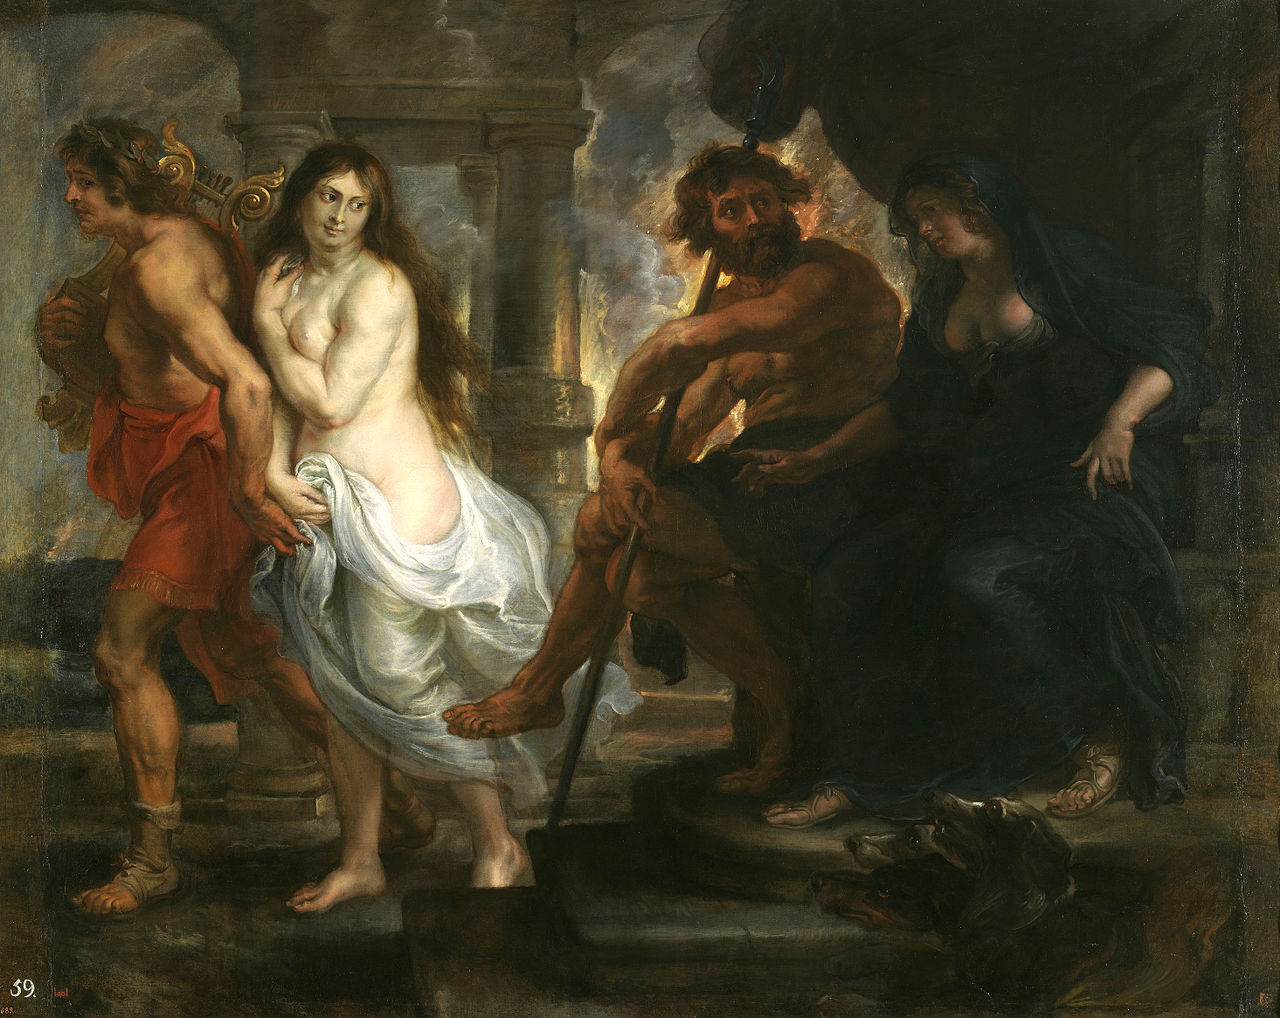 Orpheus and Eurydice's image